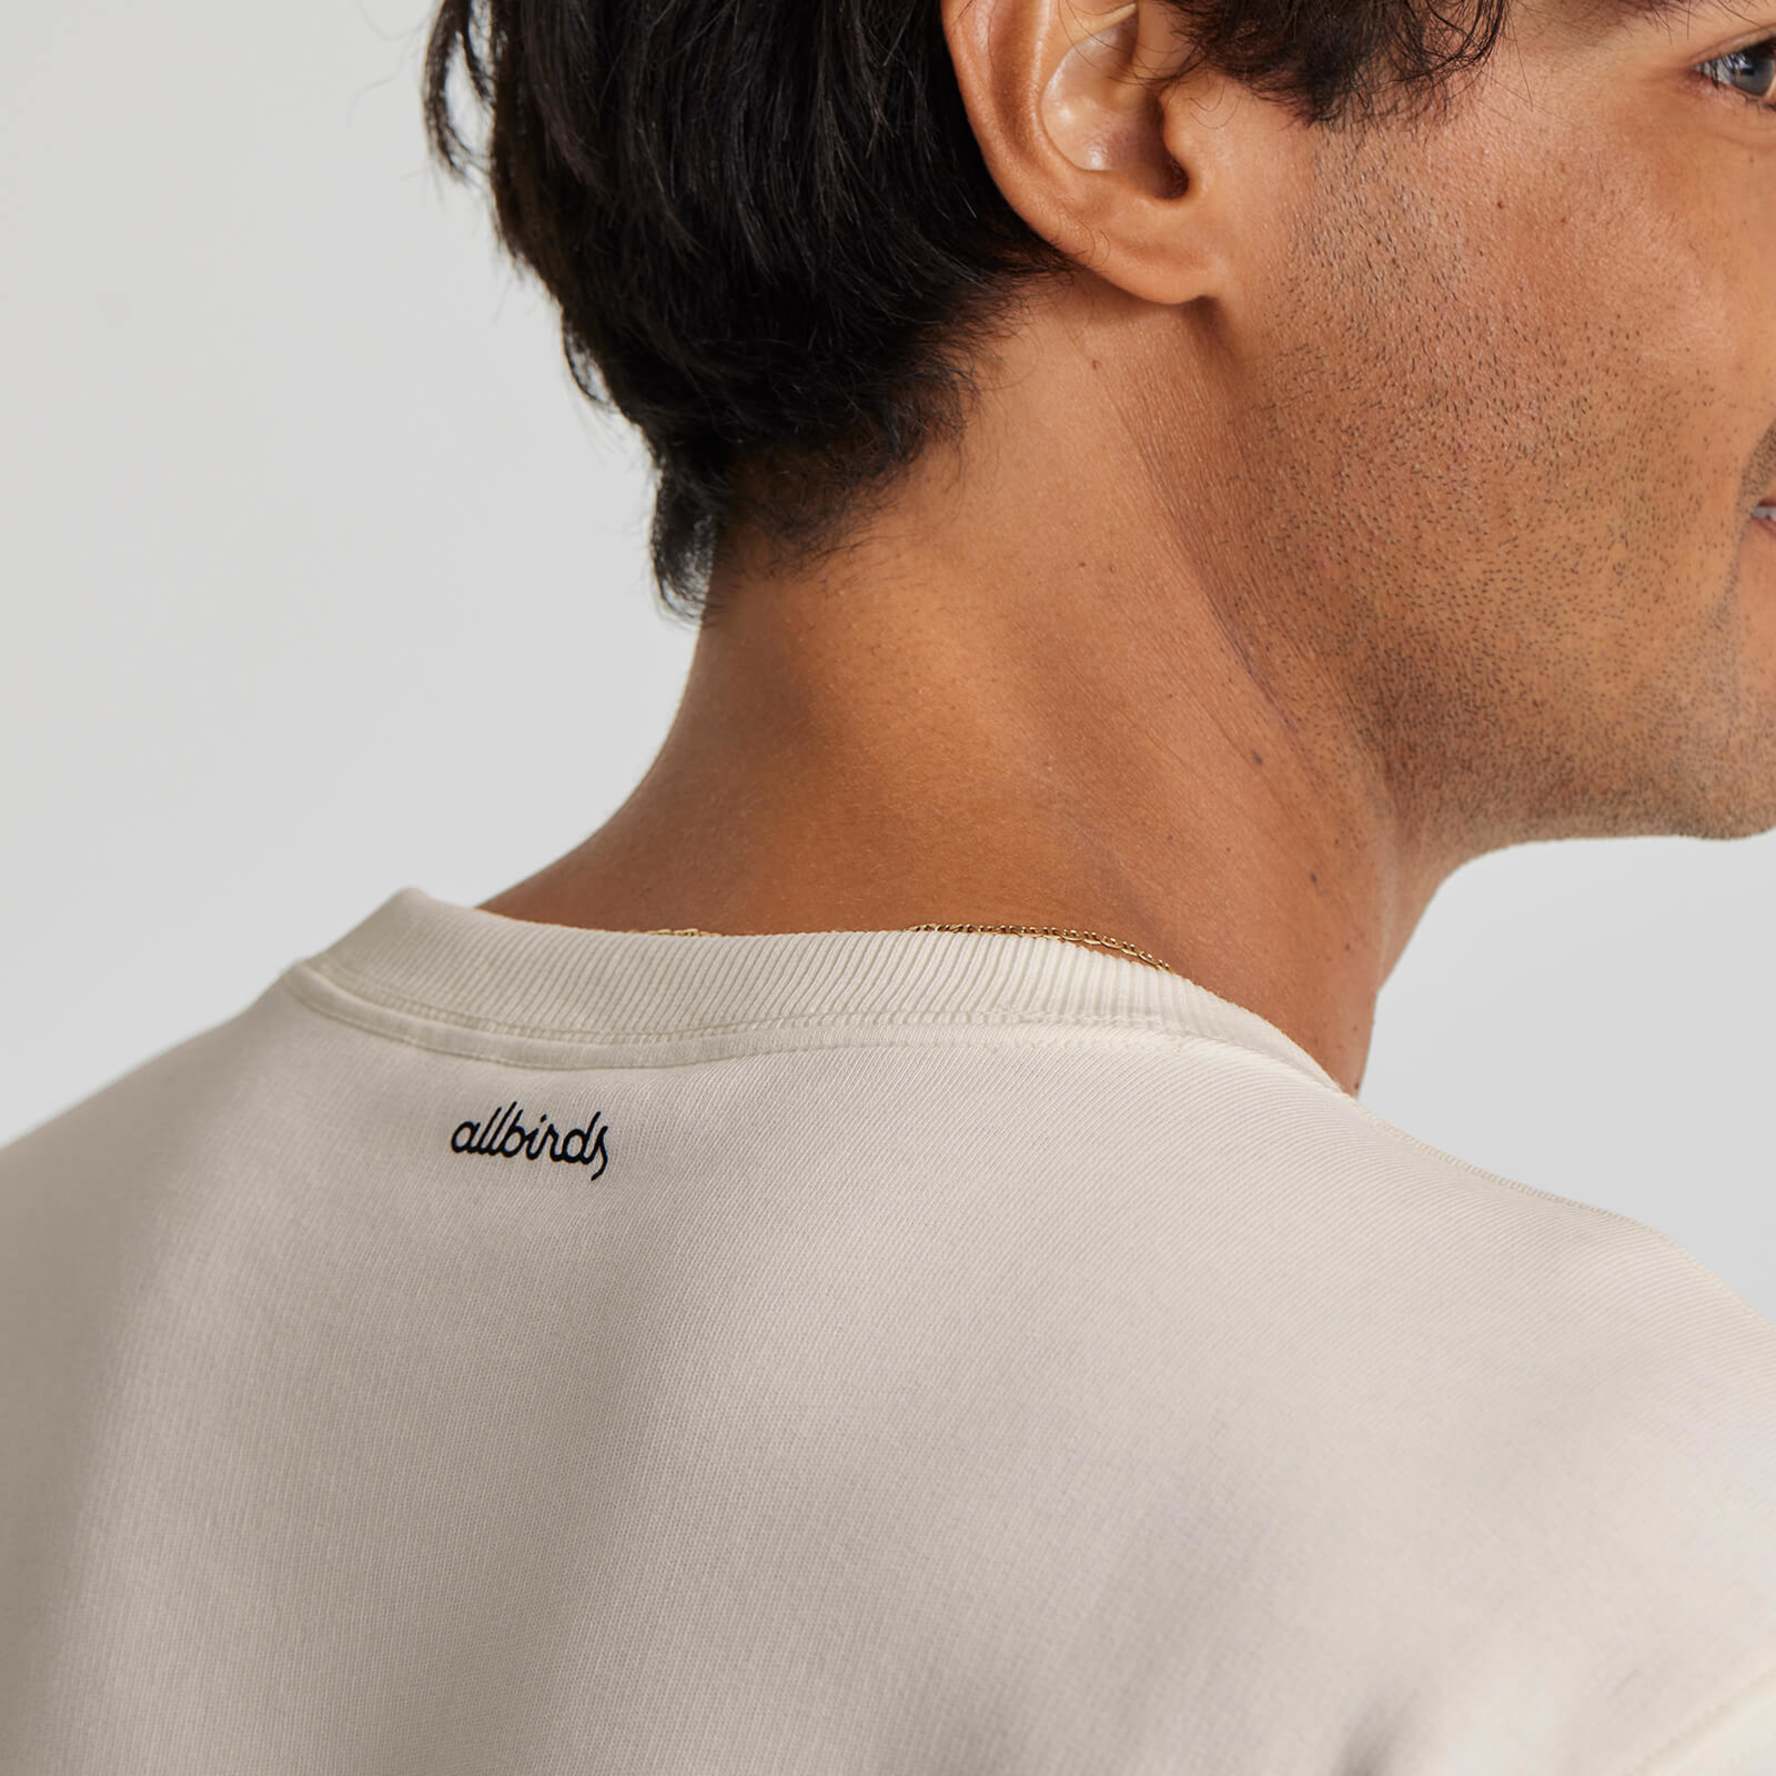 Men's R&R True Navy Sweatshirt -  Allbirds Sustainable Sweatshirt For Men